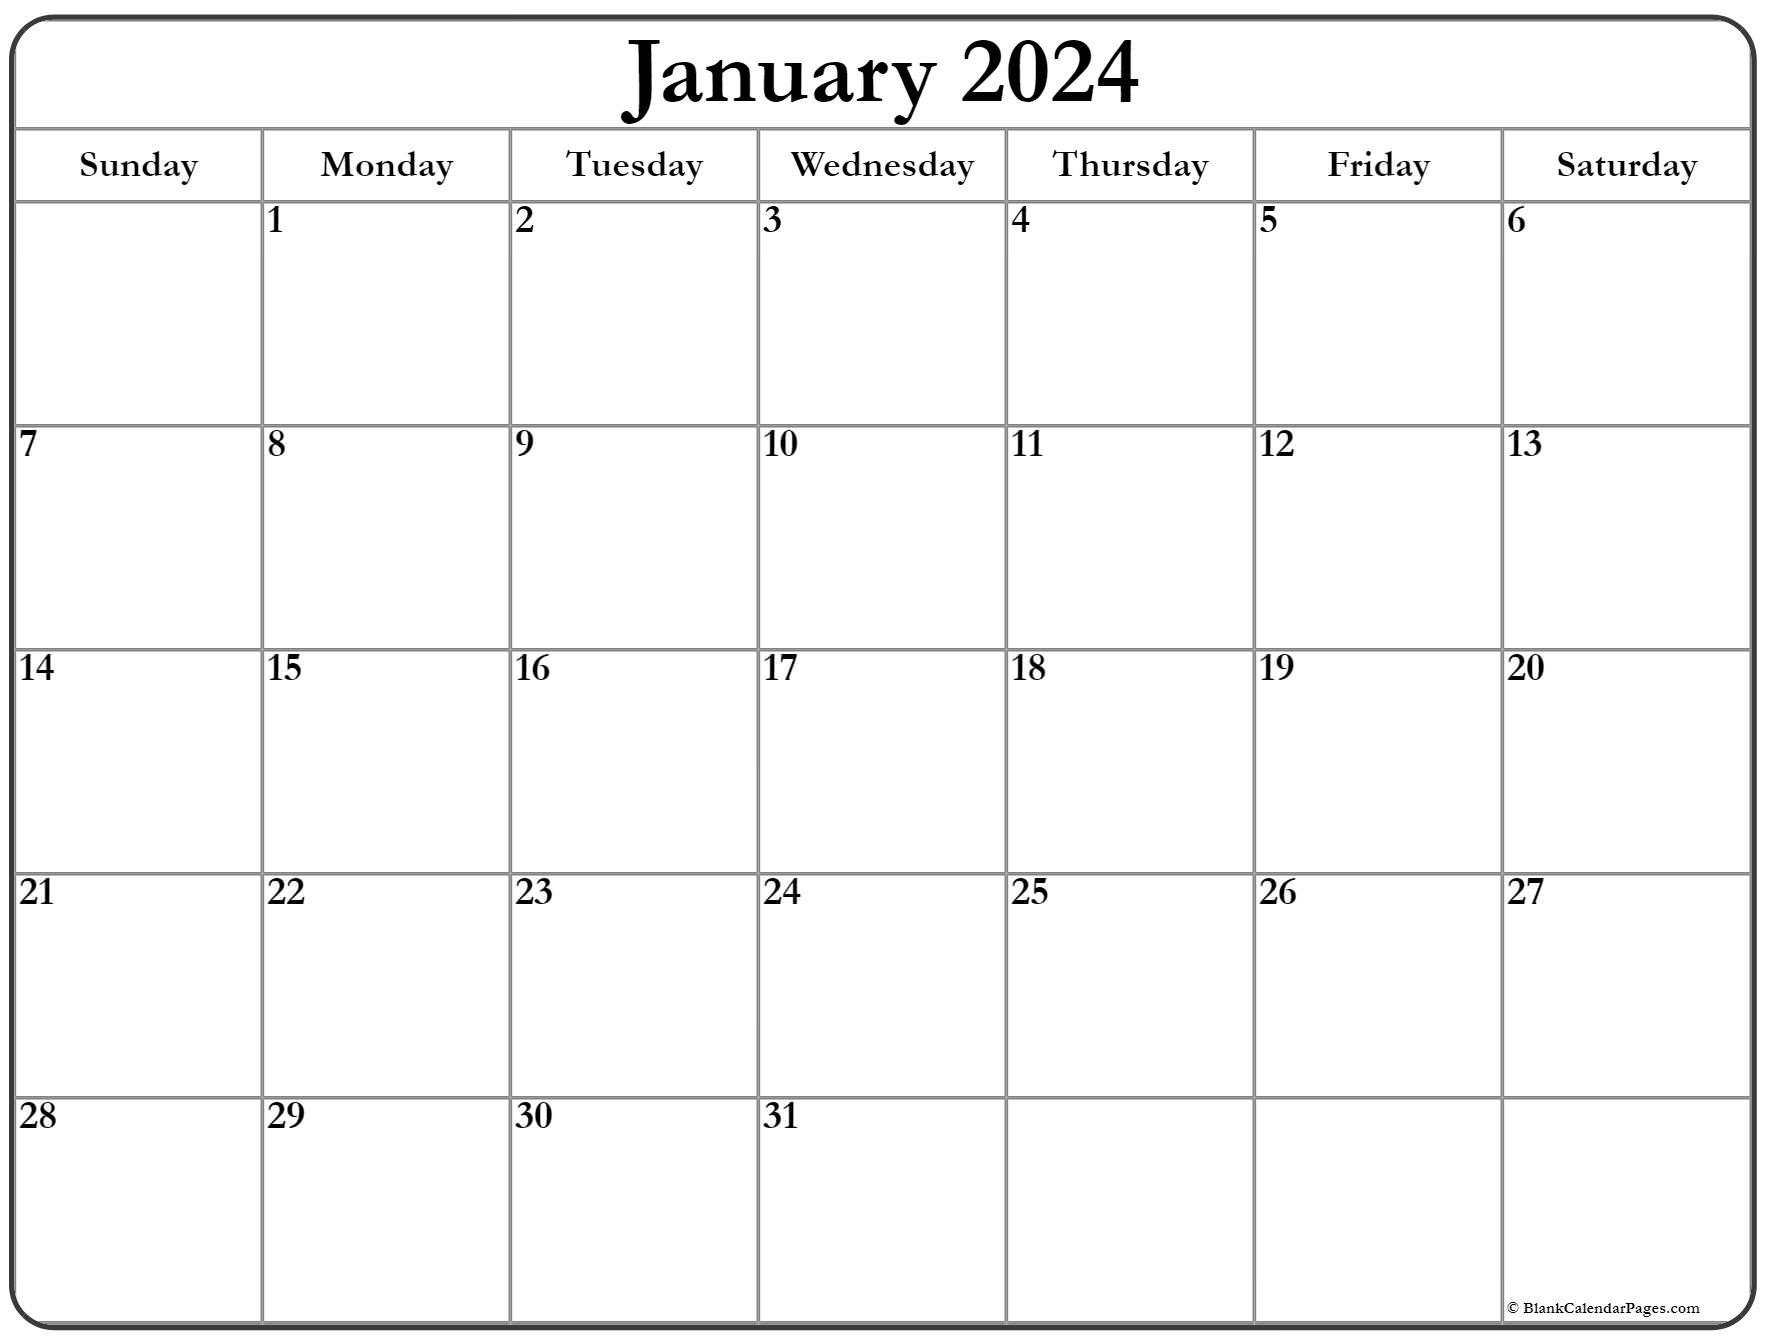 calendar-holiday-2024-latest-news